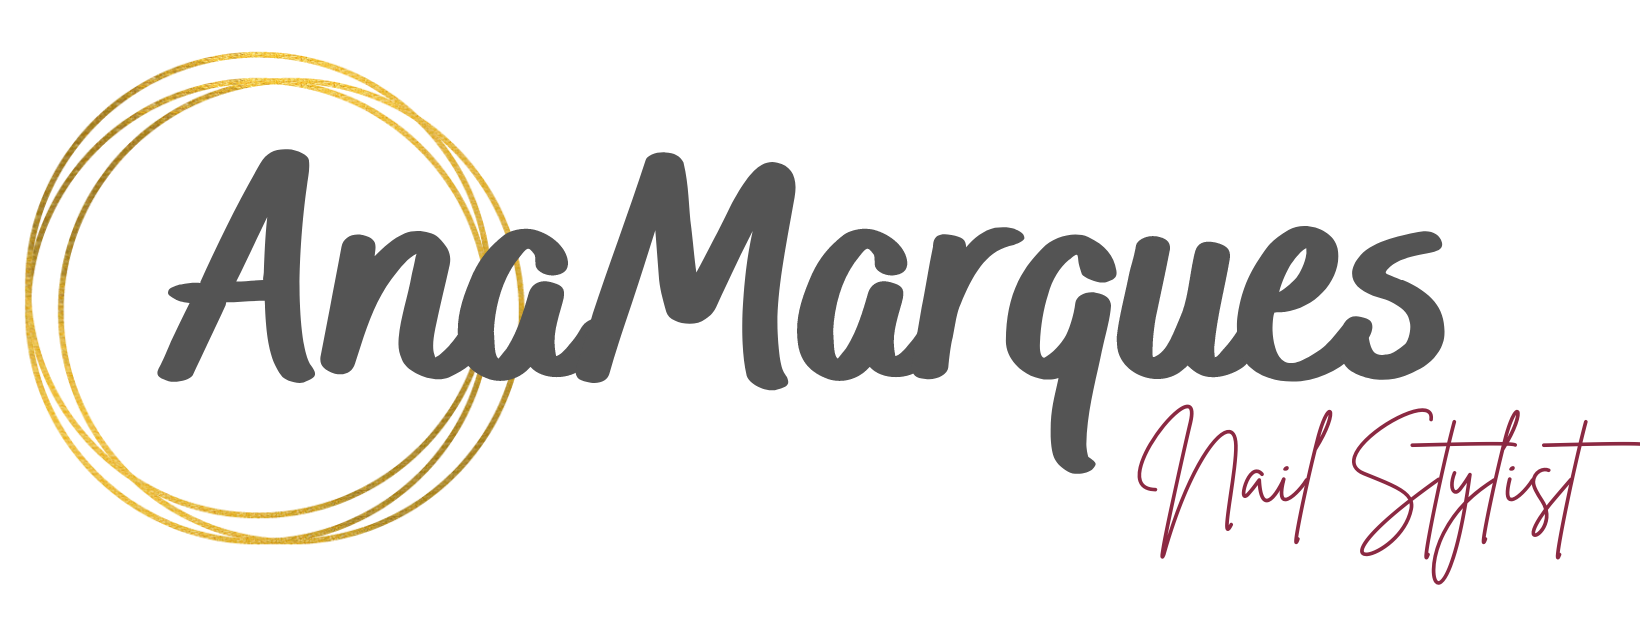 Logotipo-Ana-Marques-NBG-e1692037415995.png